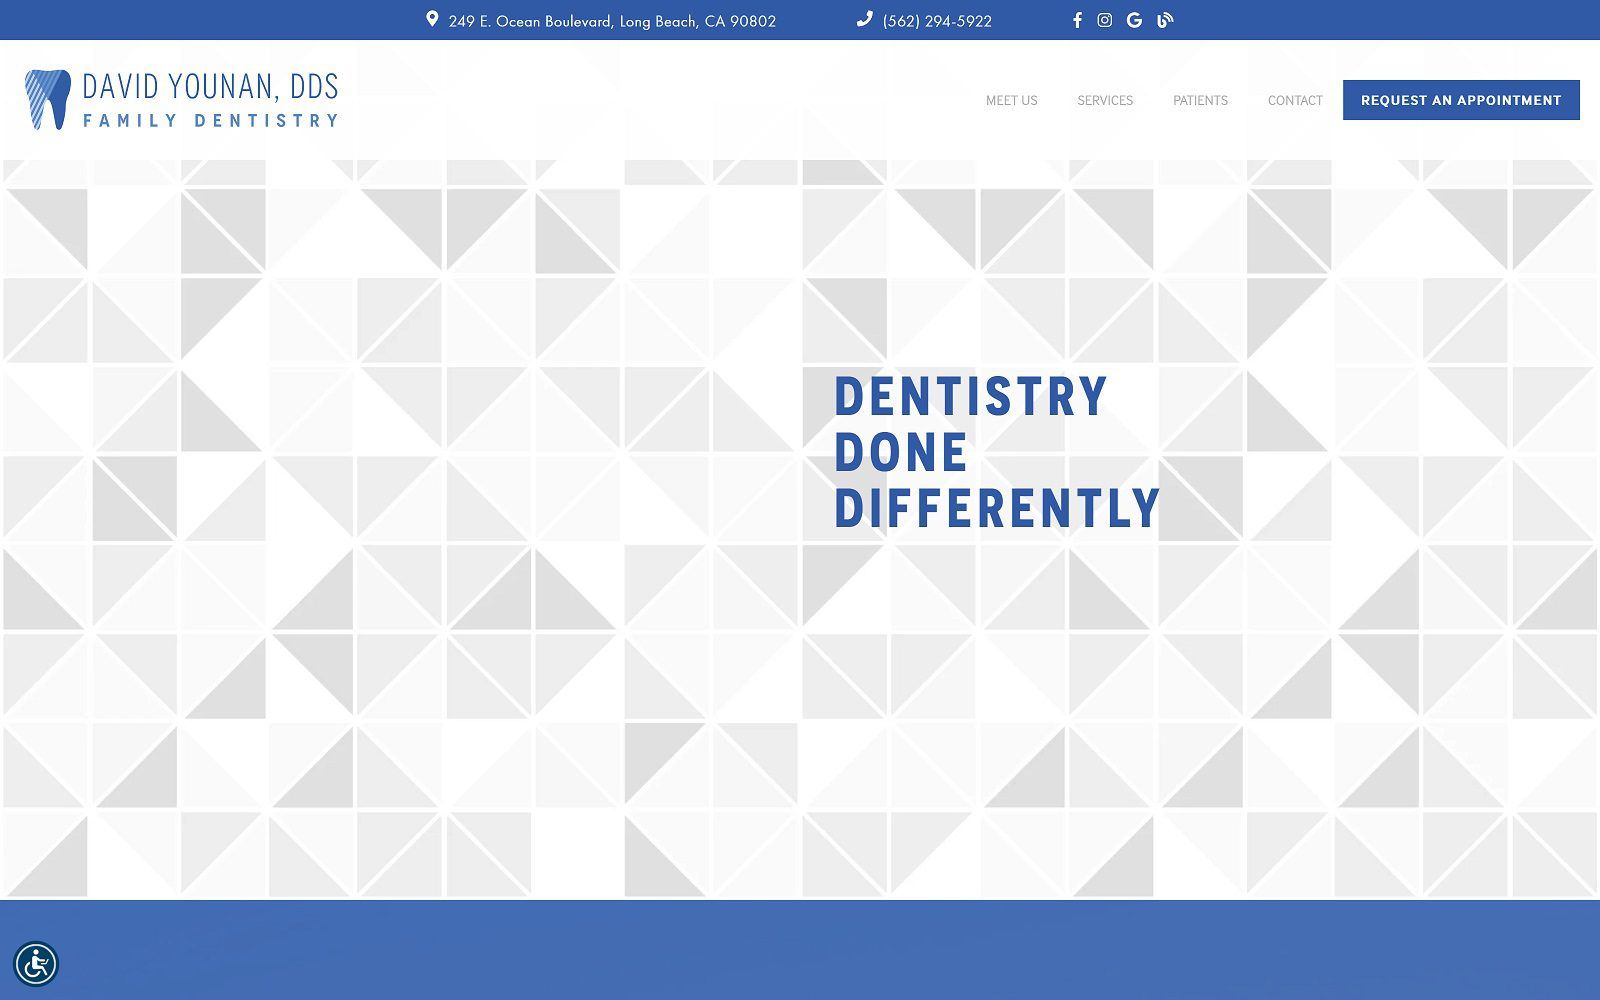 The screenshot of long beach dental wellness: david younan, dds website